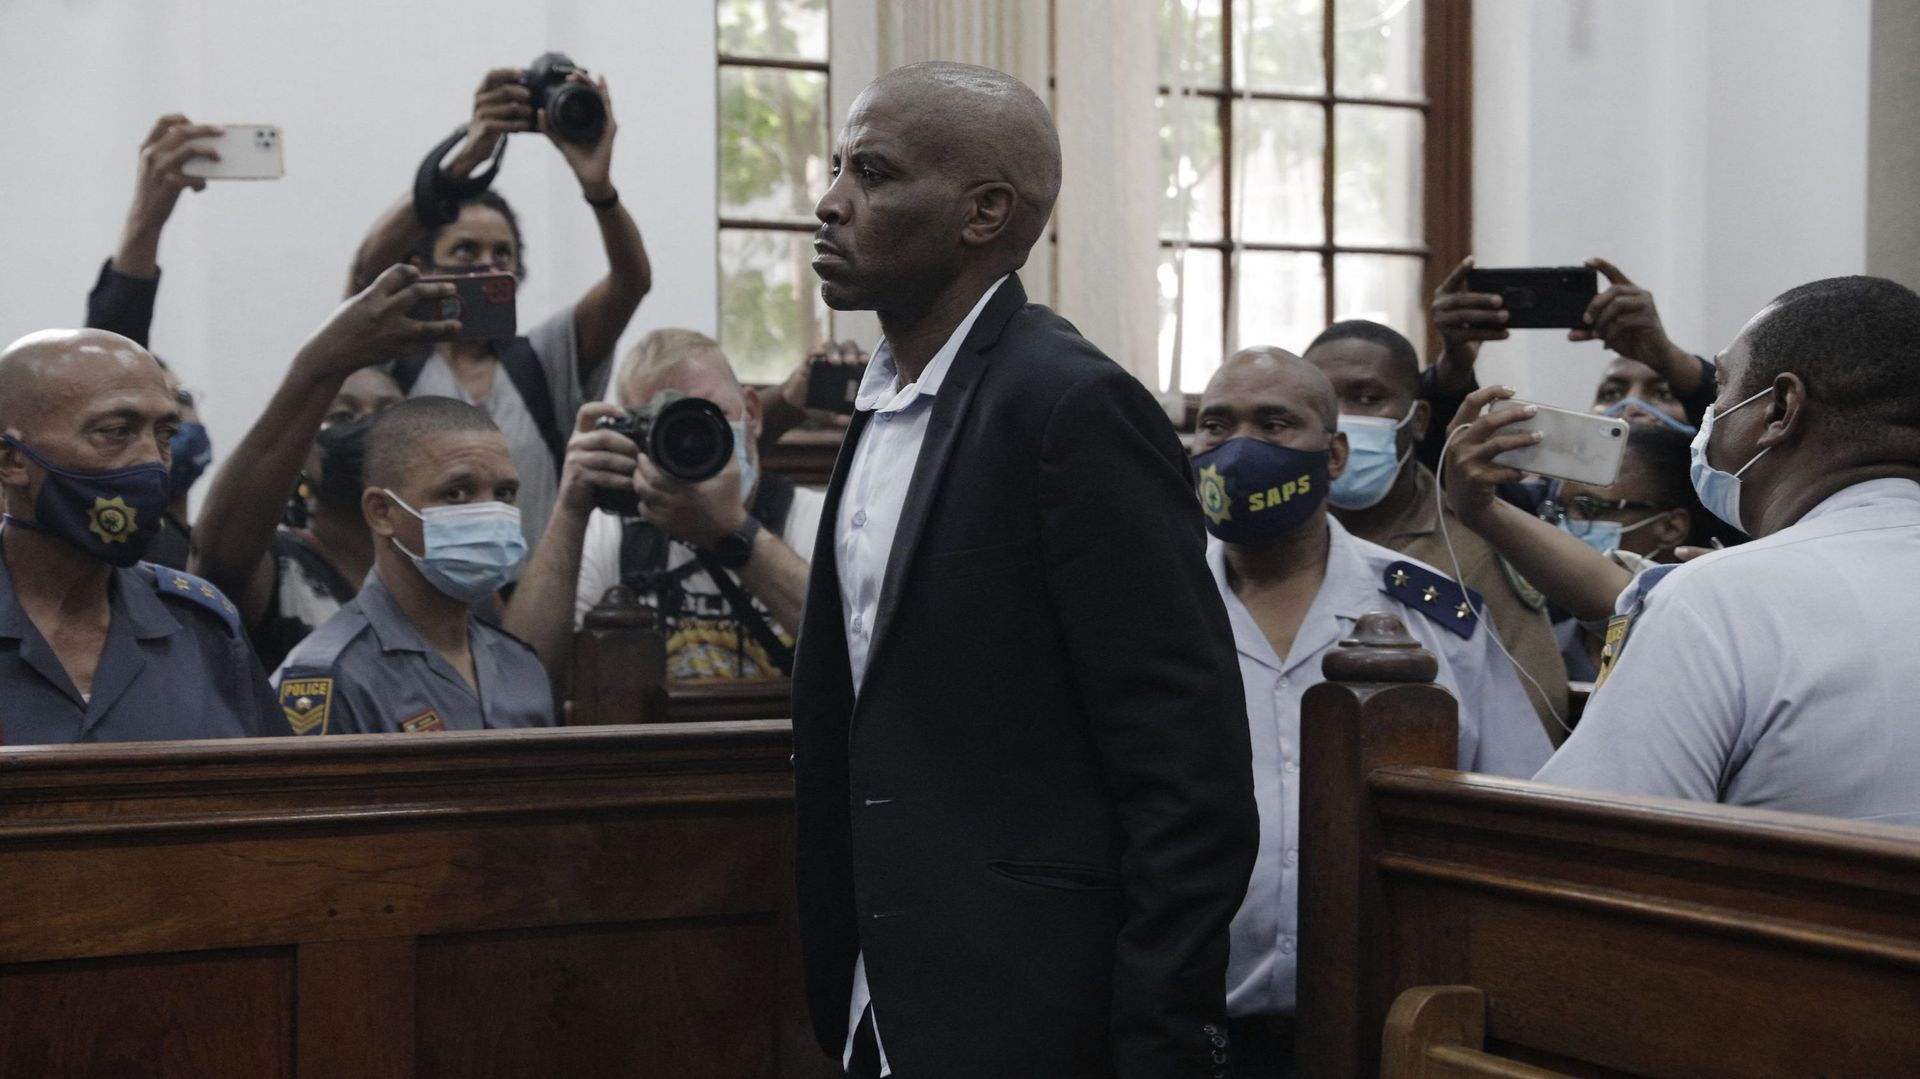 Zandile Christmas Mafe (C), un suspect lié à l'incendie du Parlement sud-africain, comparaît devant le tribunal de première instance du Cap, le 11 janvier 2022.